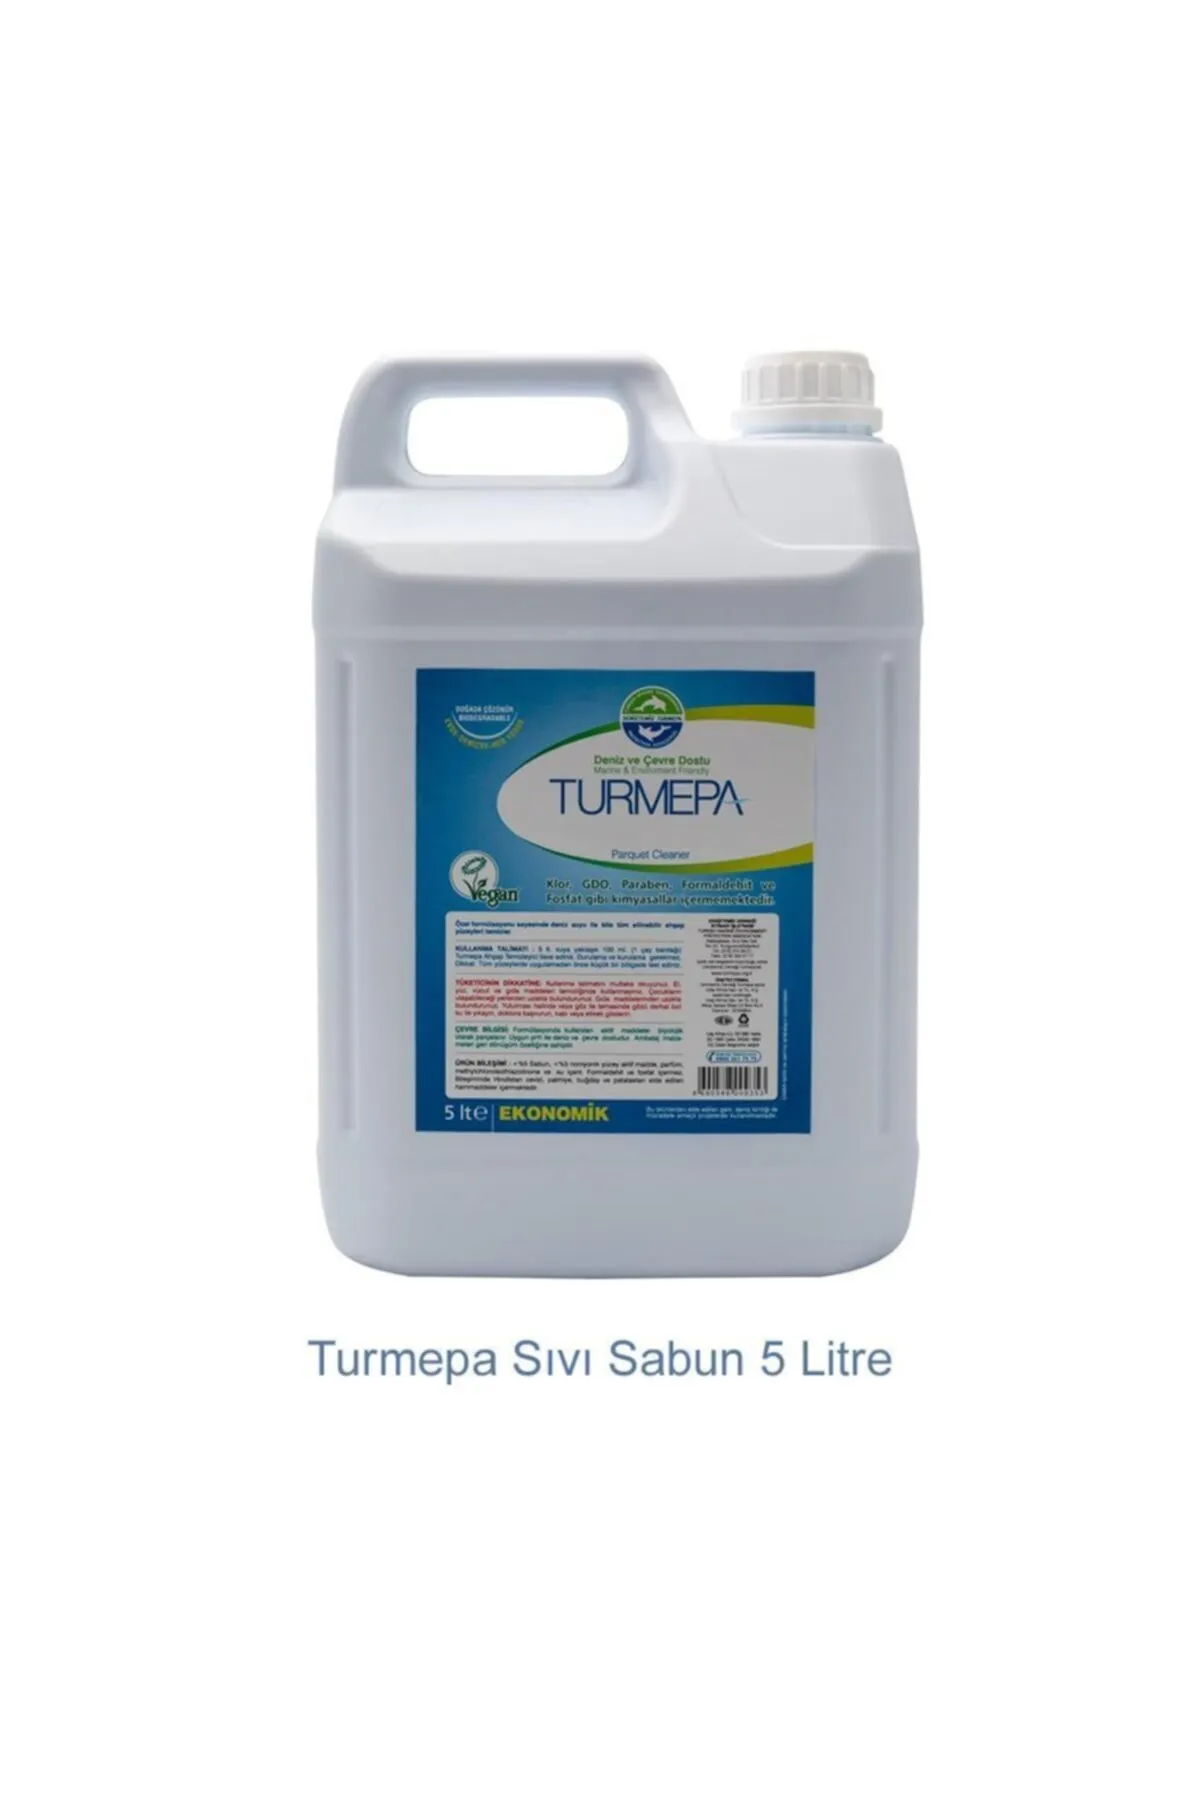 Turmepa - TURMEPA 5 lt Sıvı Sabun